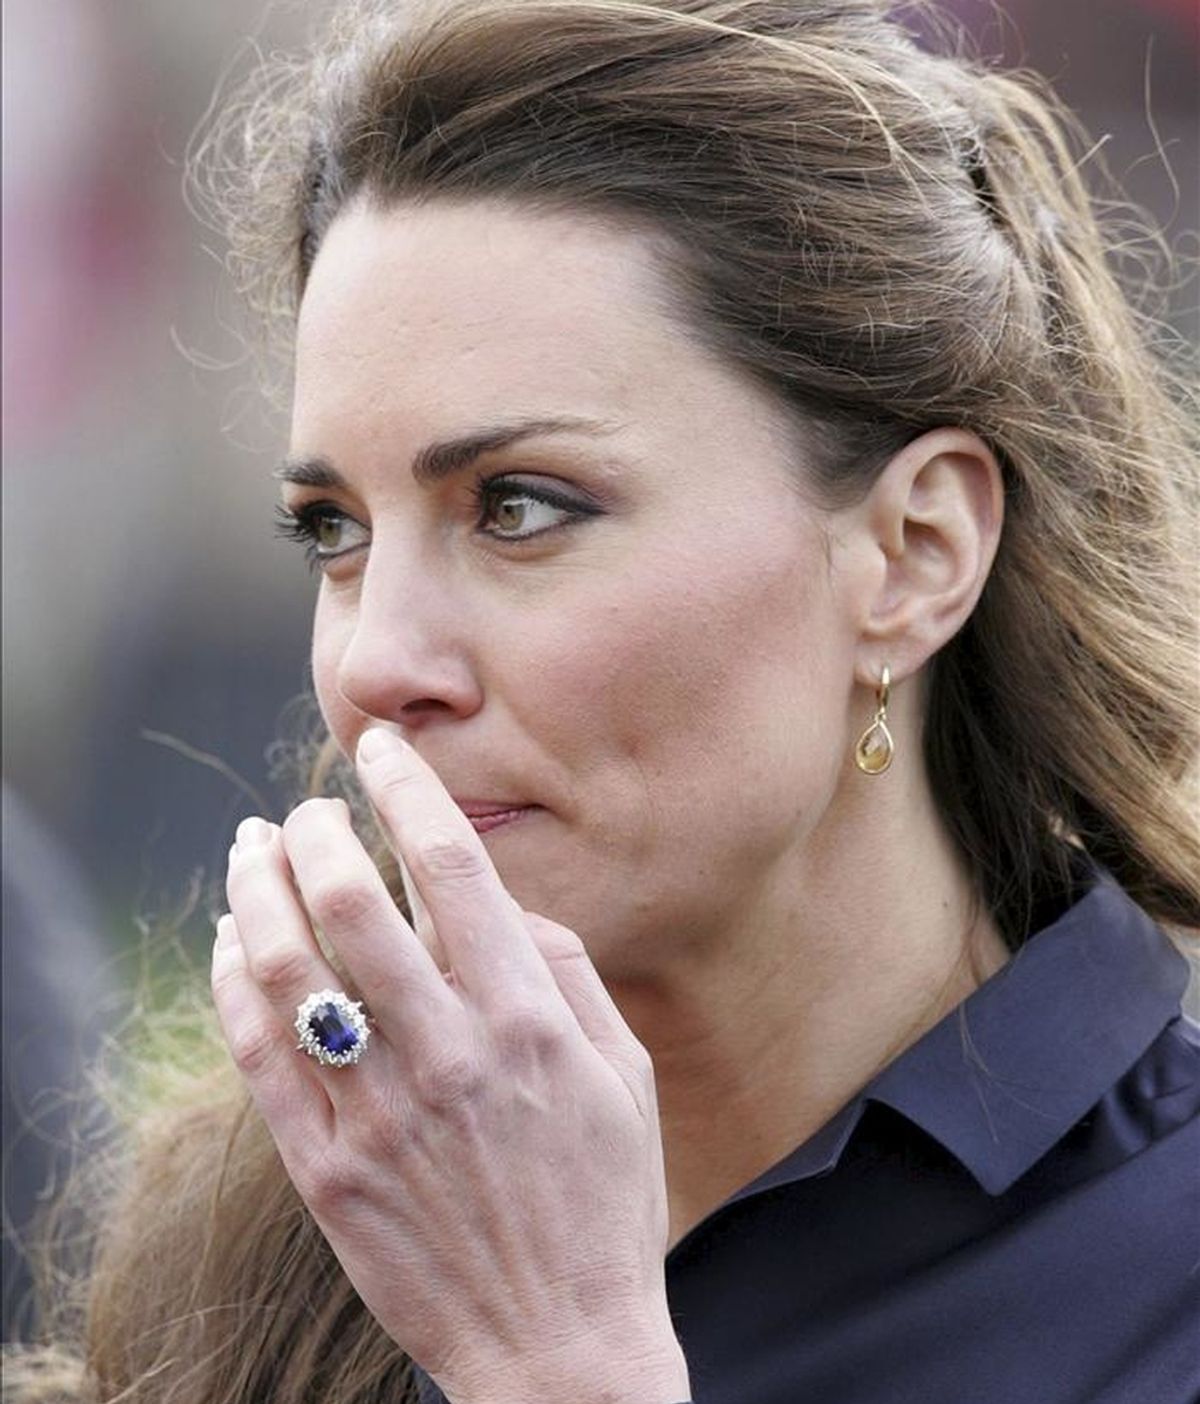 Foto de archivo de Kate Middleton, prometida del príncipe Guillermo de Inglaterra, durante su visita a Darwen (Reino Unido) el 11 de abril de 2011. EFE/Archivo